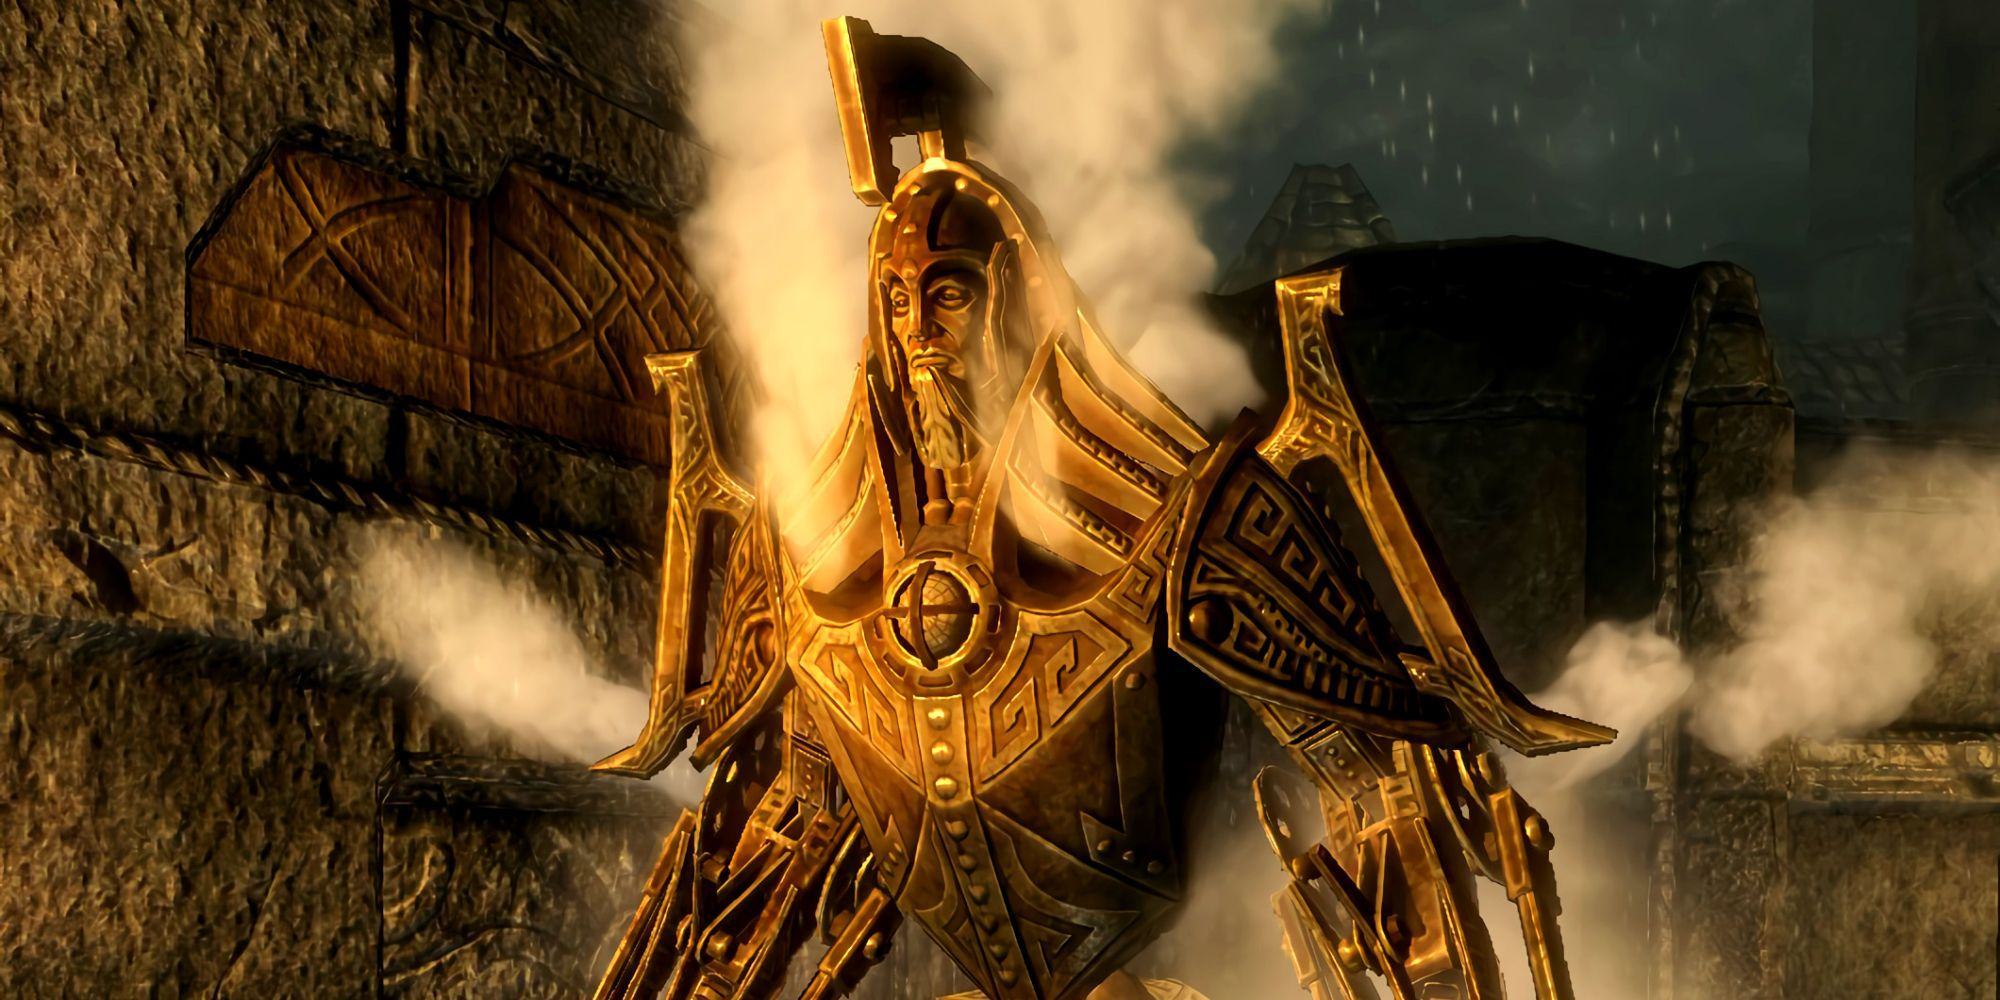 A Dwarven Centurion from The Elder Scrolls.